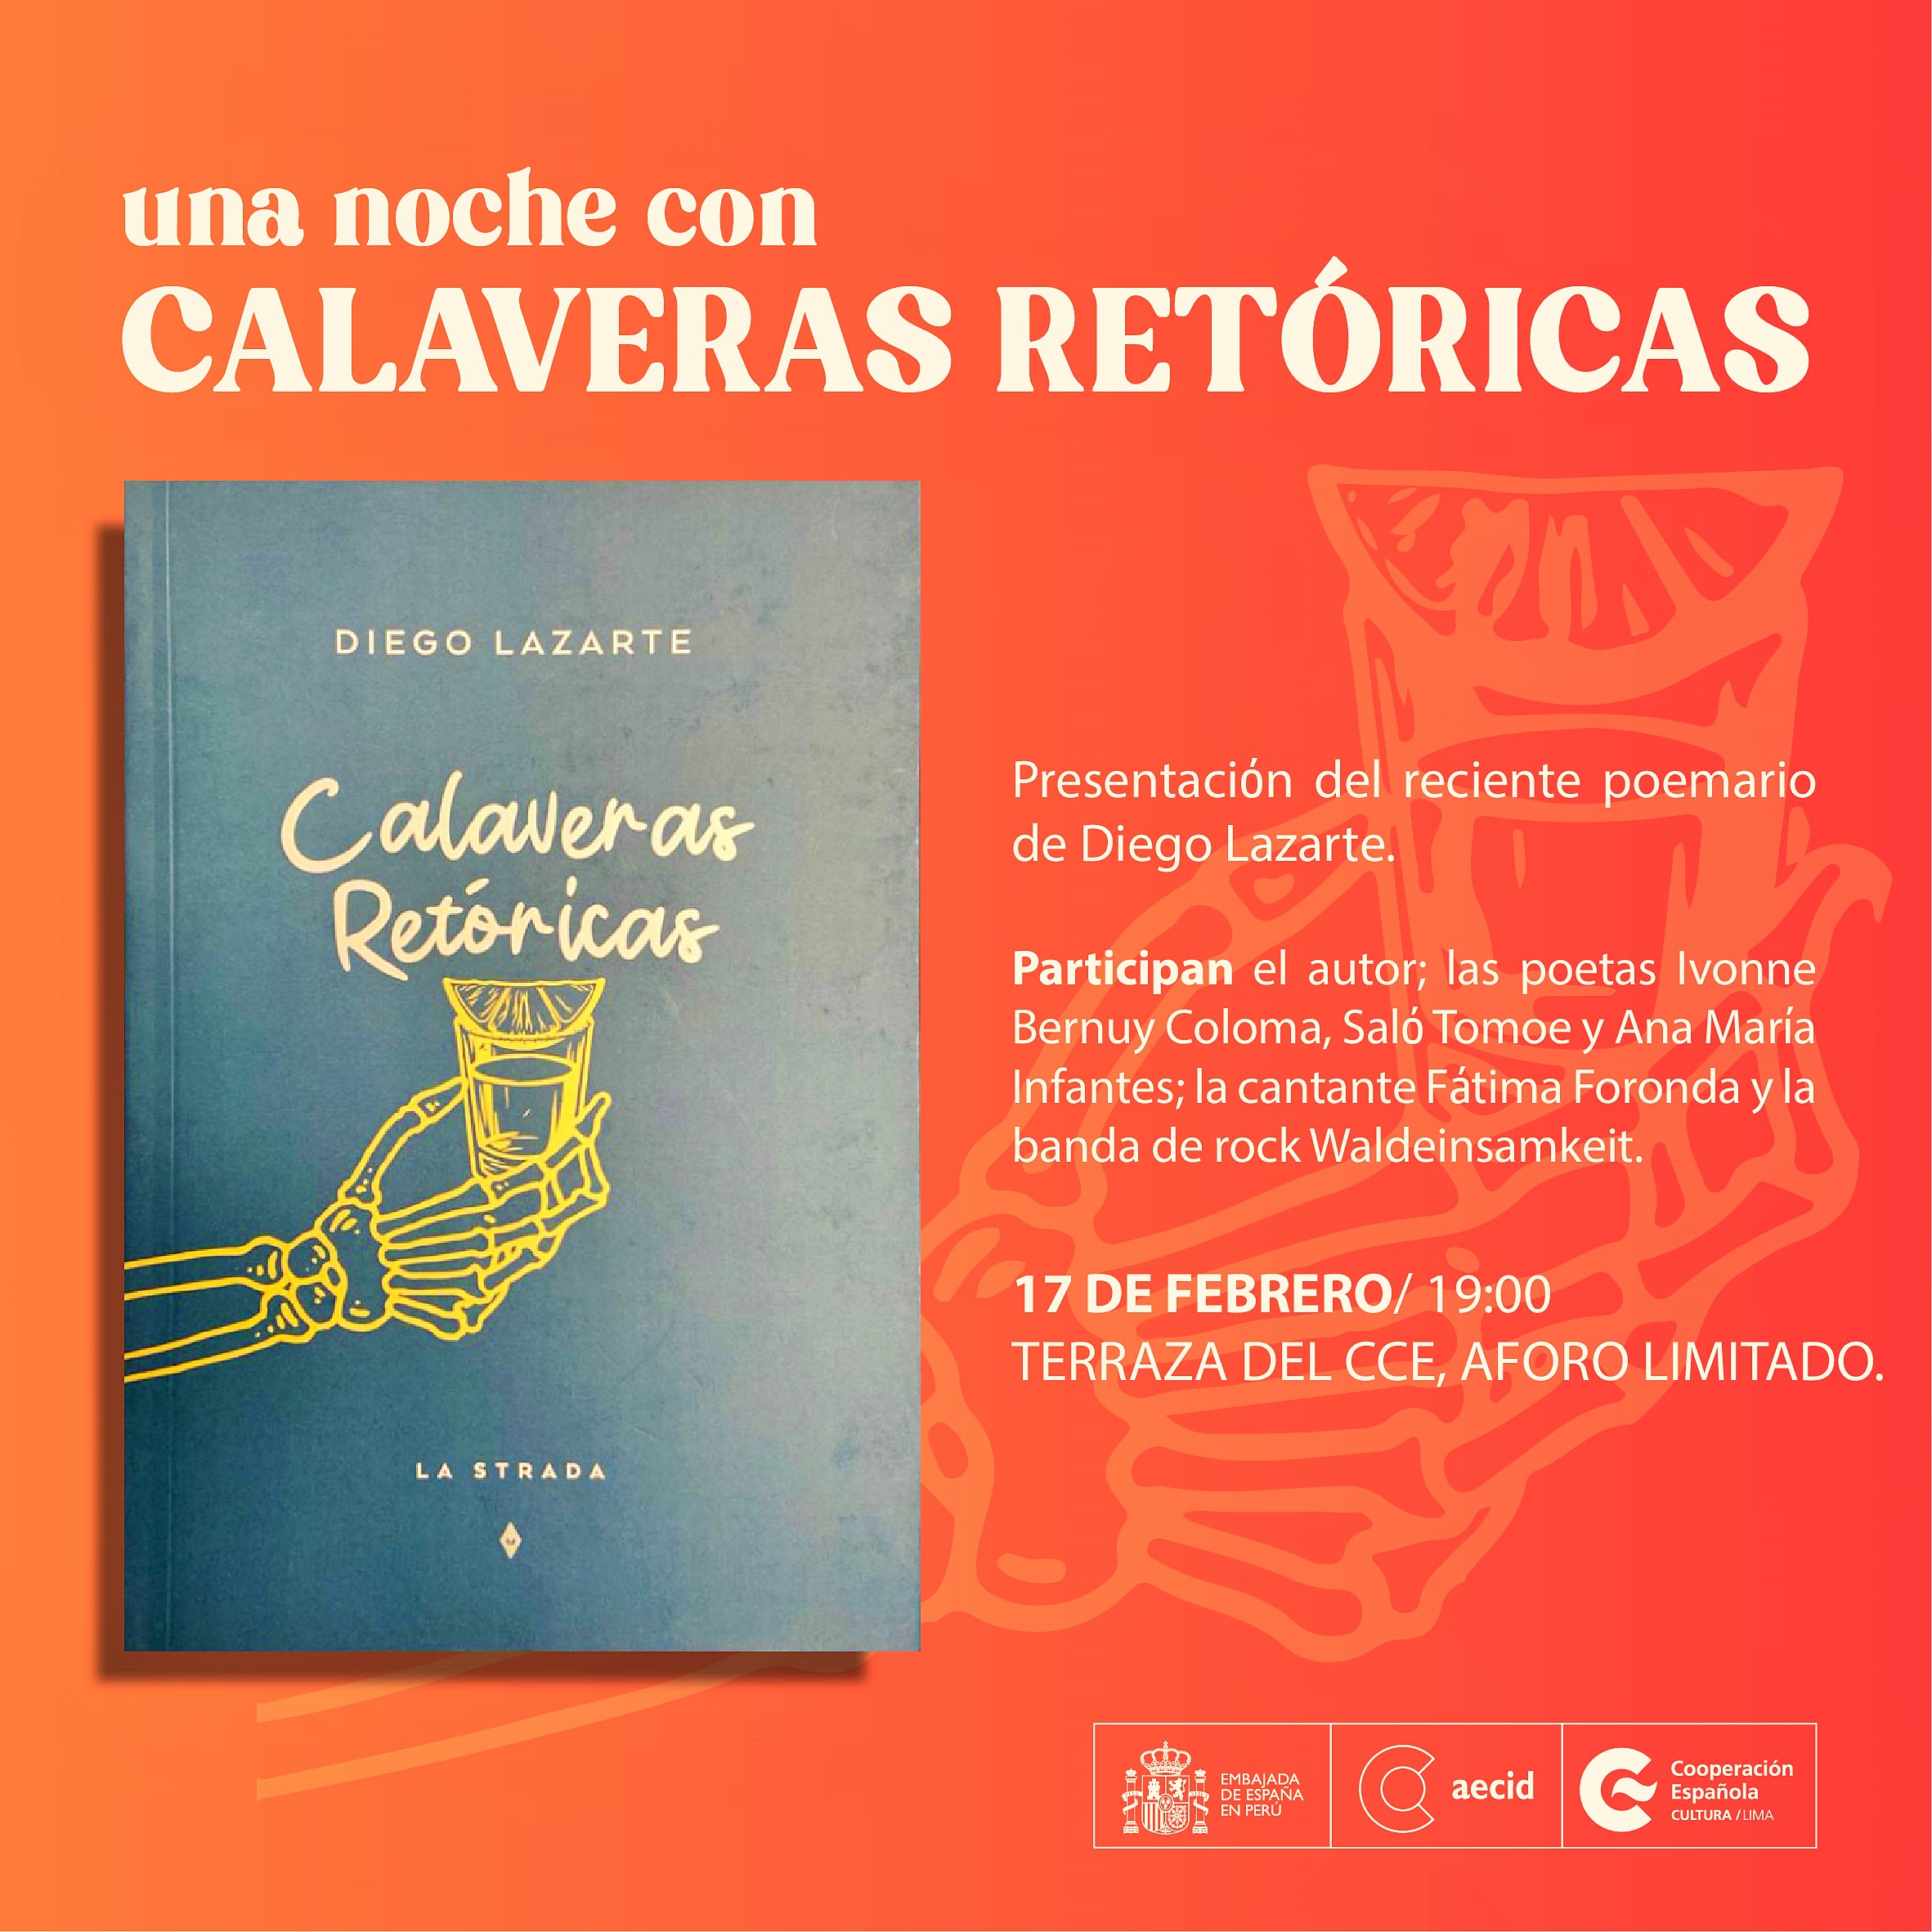 El destacado poeta, guionista y realizador audiovisual Diego Lazarte presenta su más reciente poemario Calaveras retórica